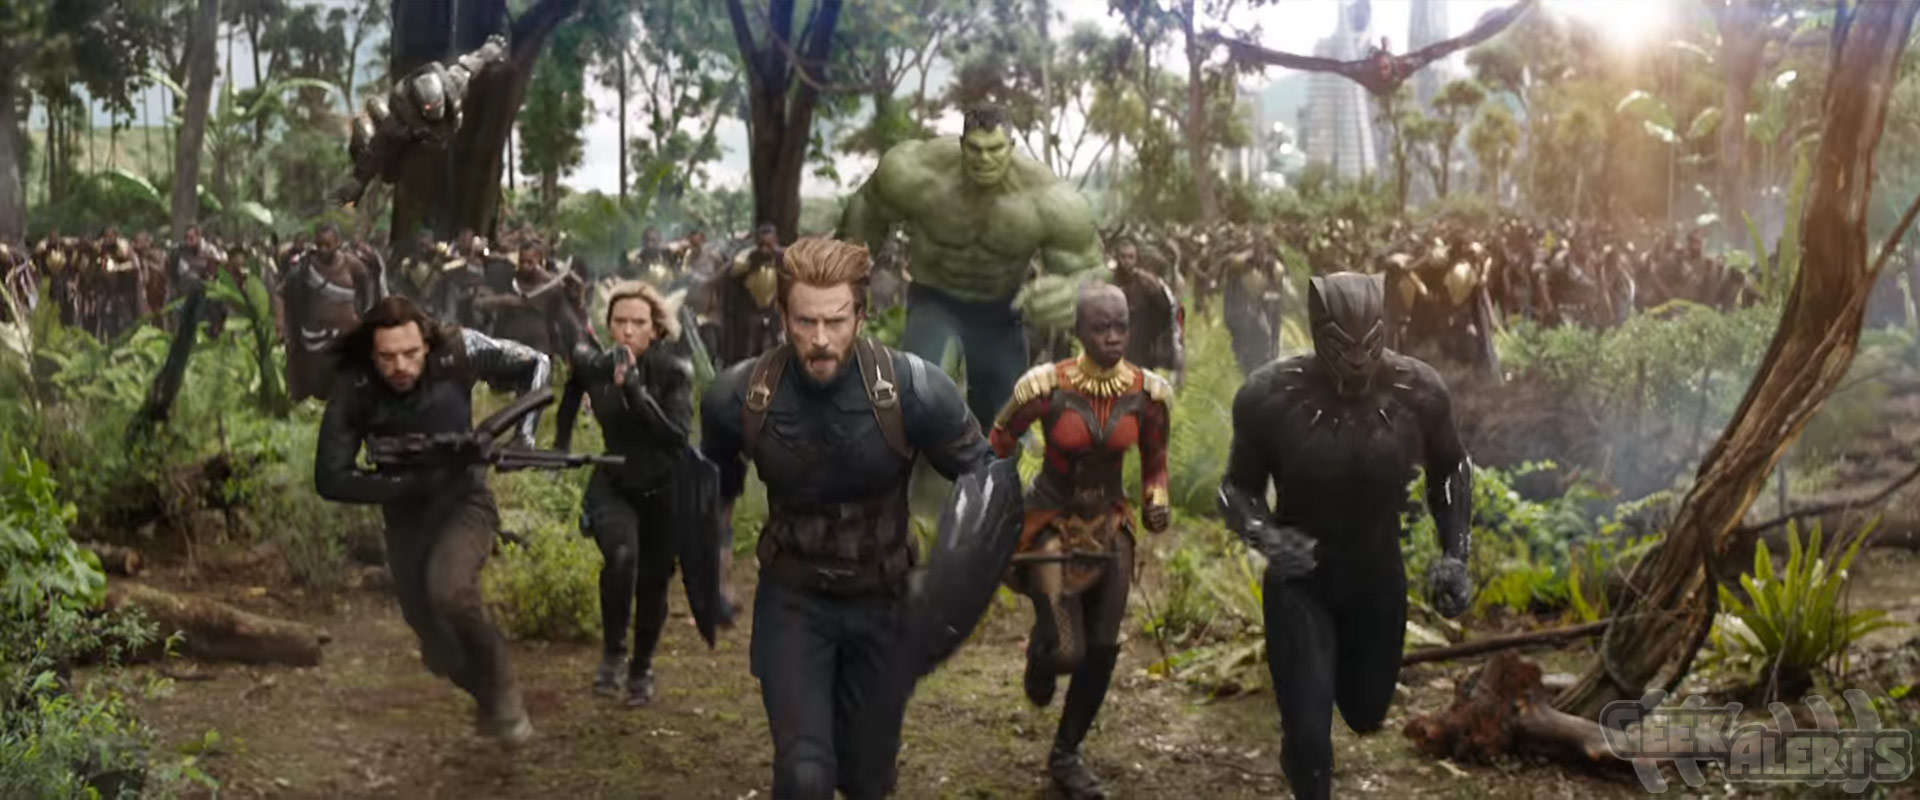 Marvel Studios' Avengers: Infinity War Super Bowl Trailer